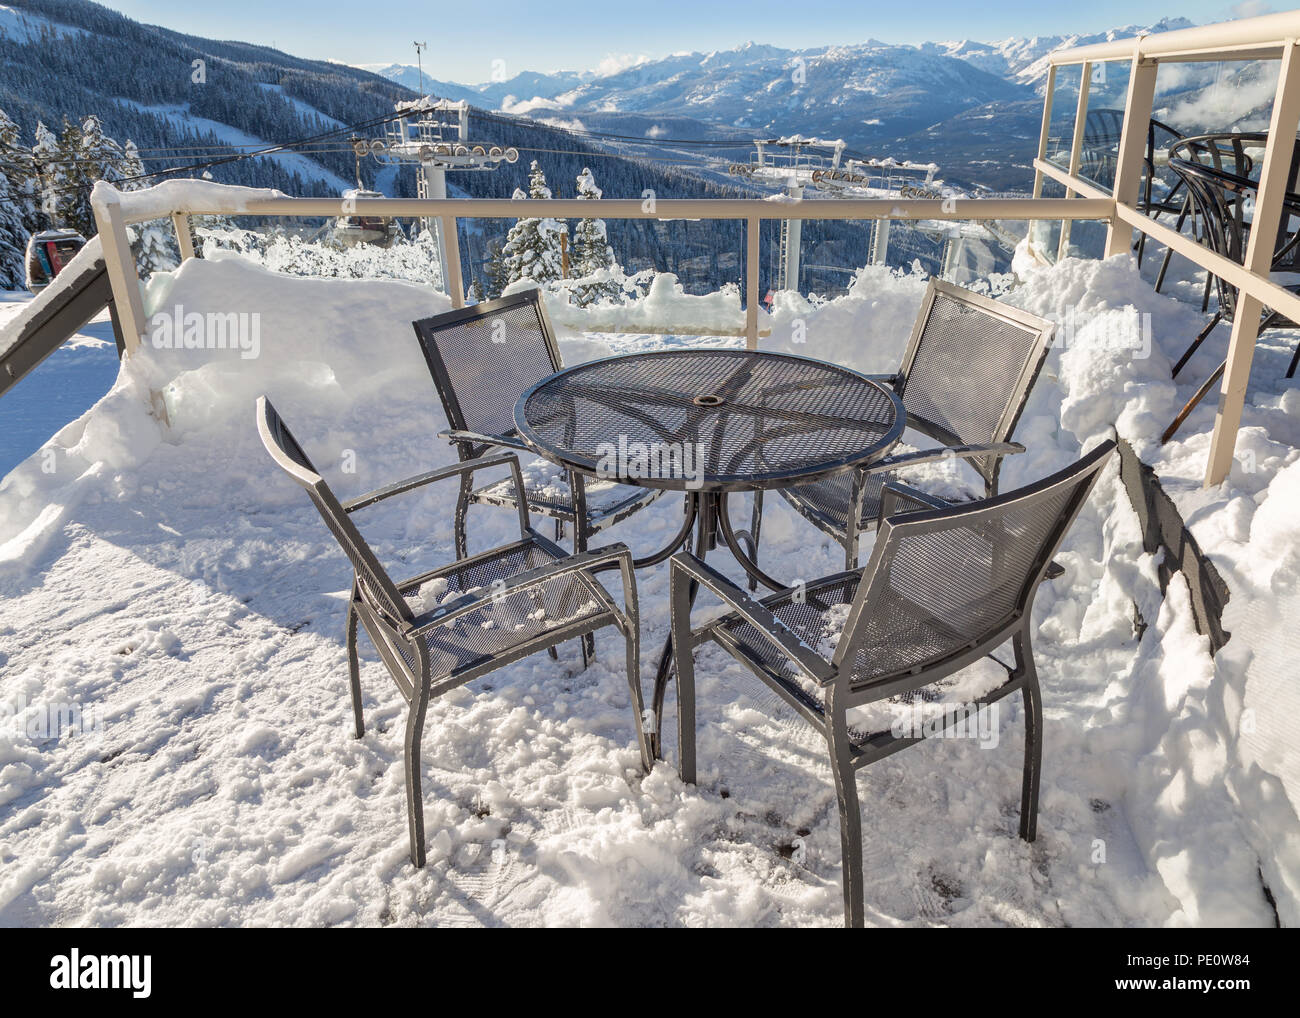 Des chaises sur un pont couvert de neige avec un télésiège tower en arrière-plan. Banque D'Images